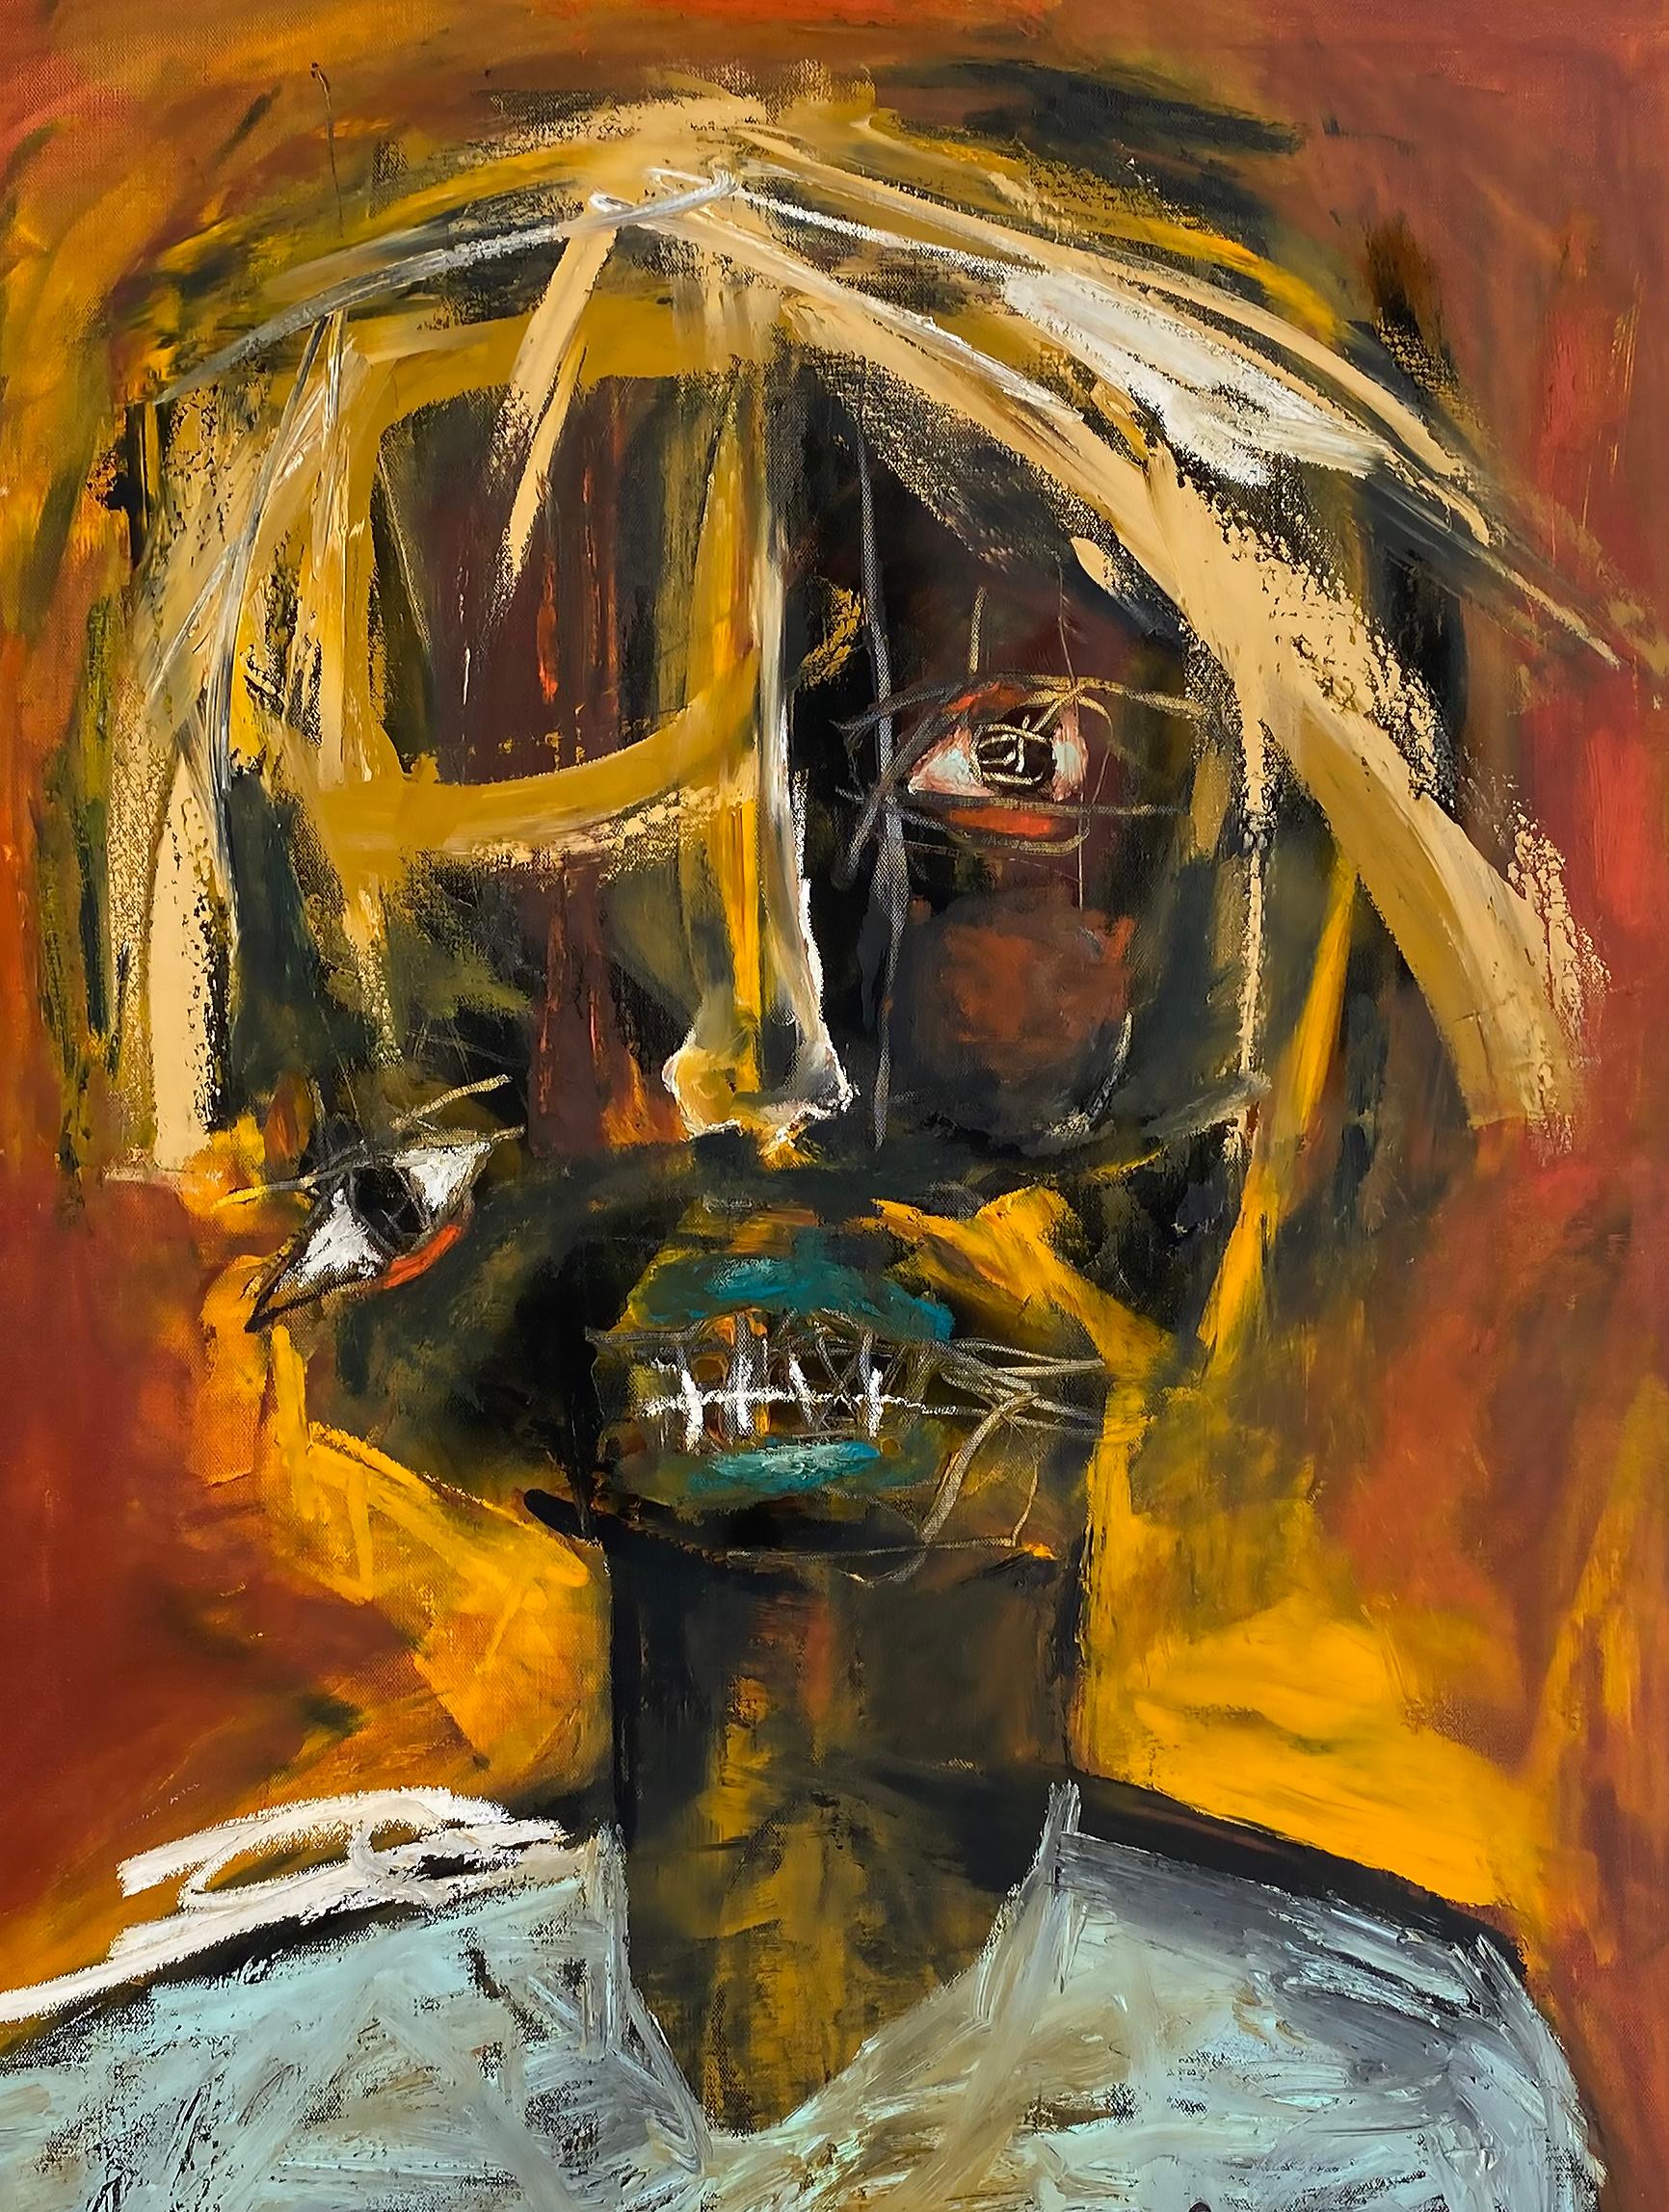 Peinture à l'huile abstraite sur toile Laurent Proneur, artiste américain français

Nous proposons à la vente une peinture abstraite à l'huile sur toile de l'artiste franco-américain Laurent Proneur (né en 1969-). La peinture est audacieuse et